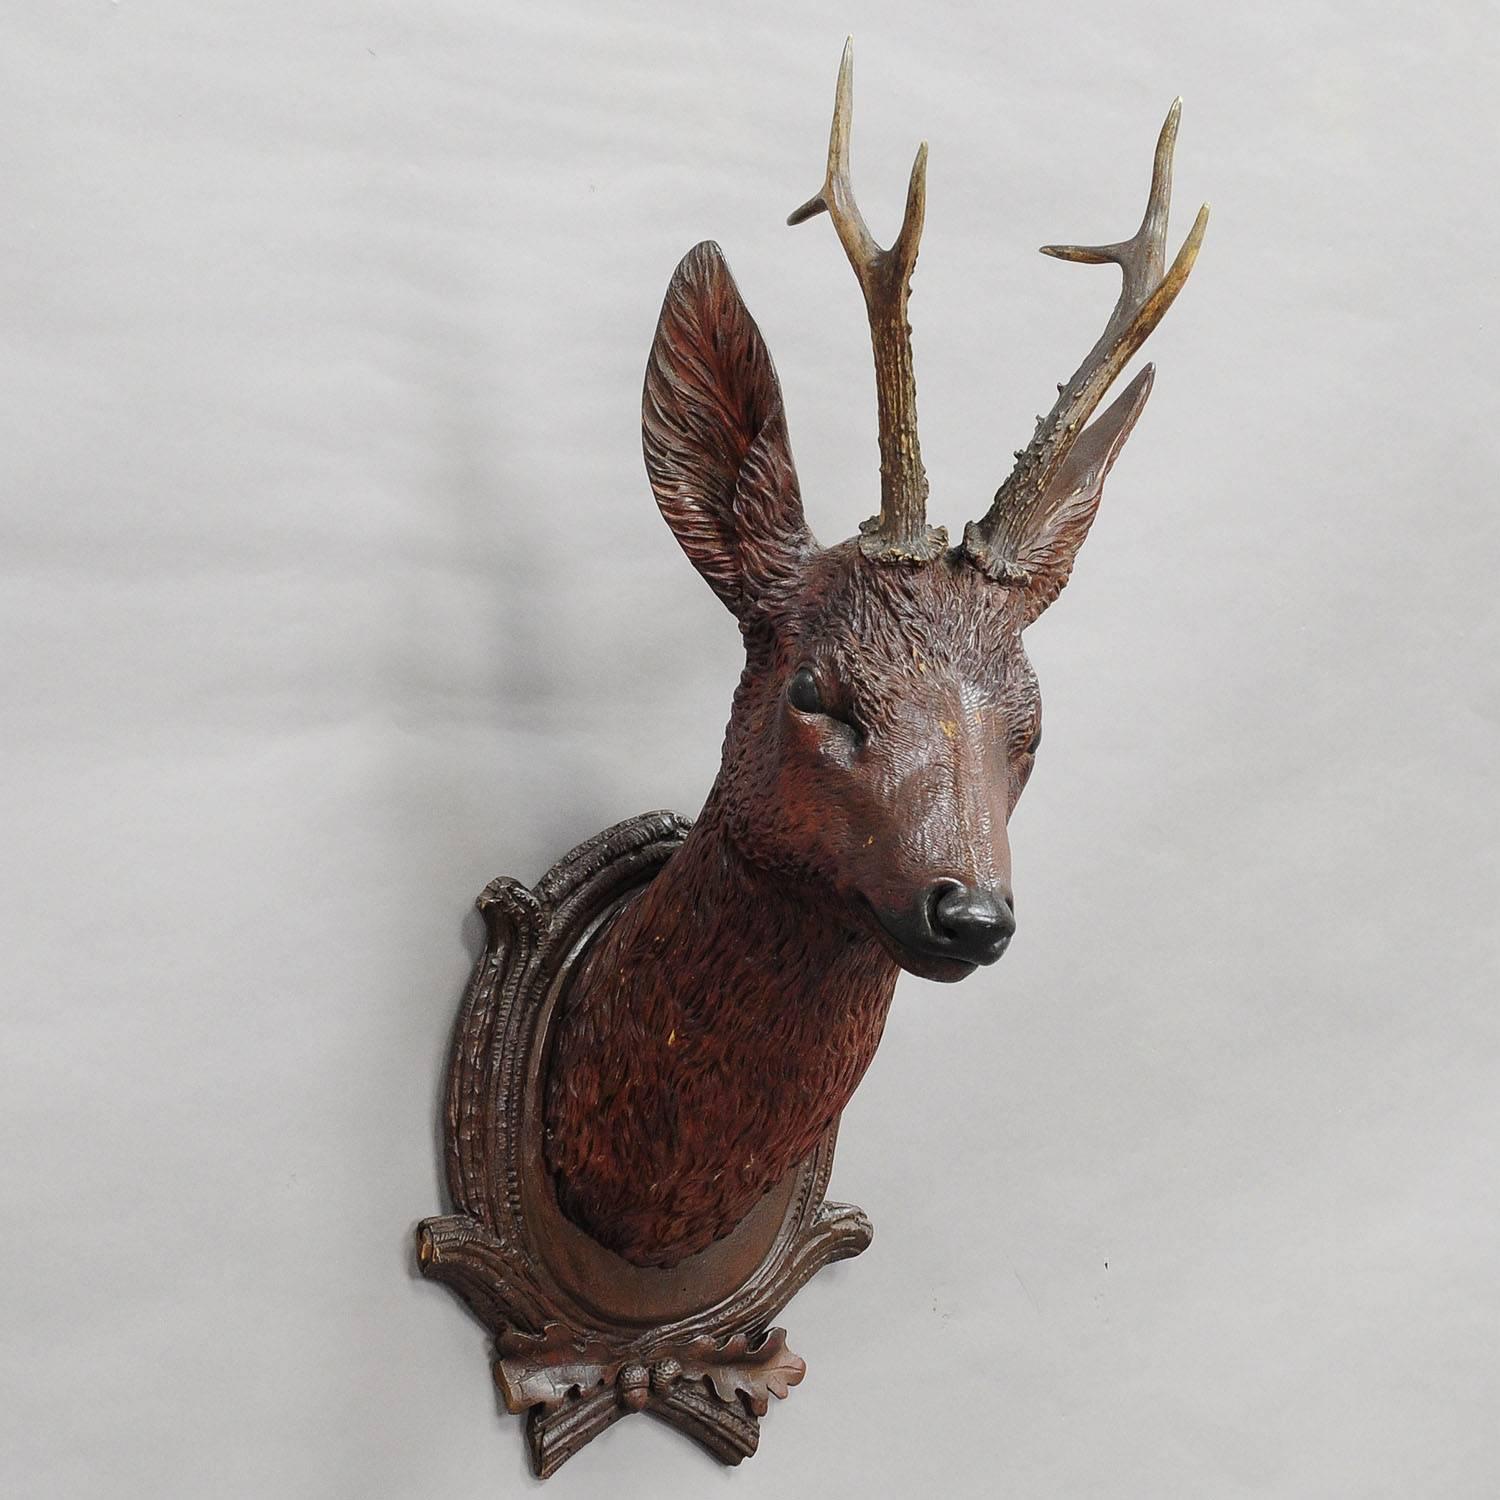 German Black Forest Carved Wood Deer Head with Real Antlers